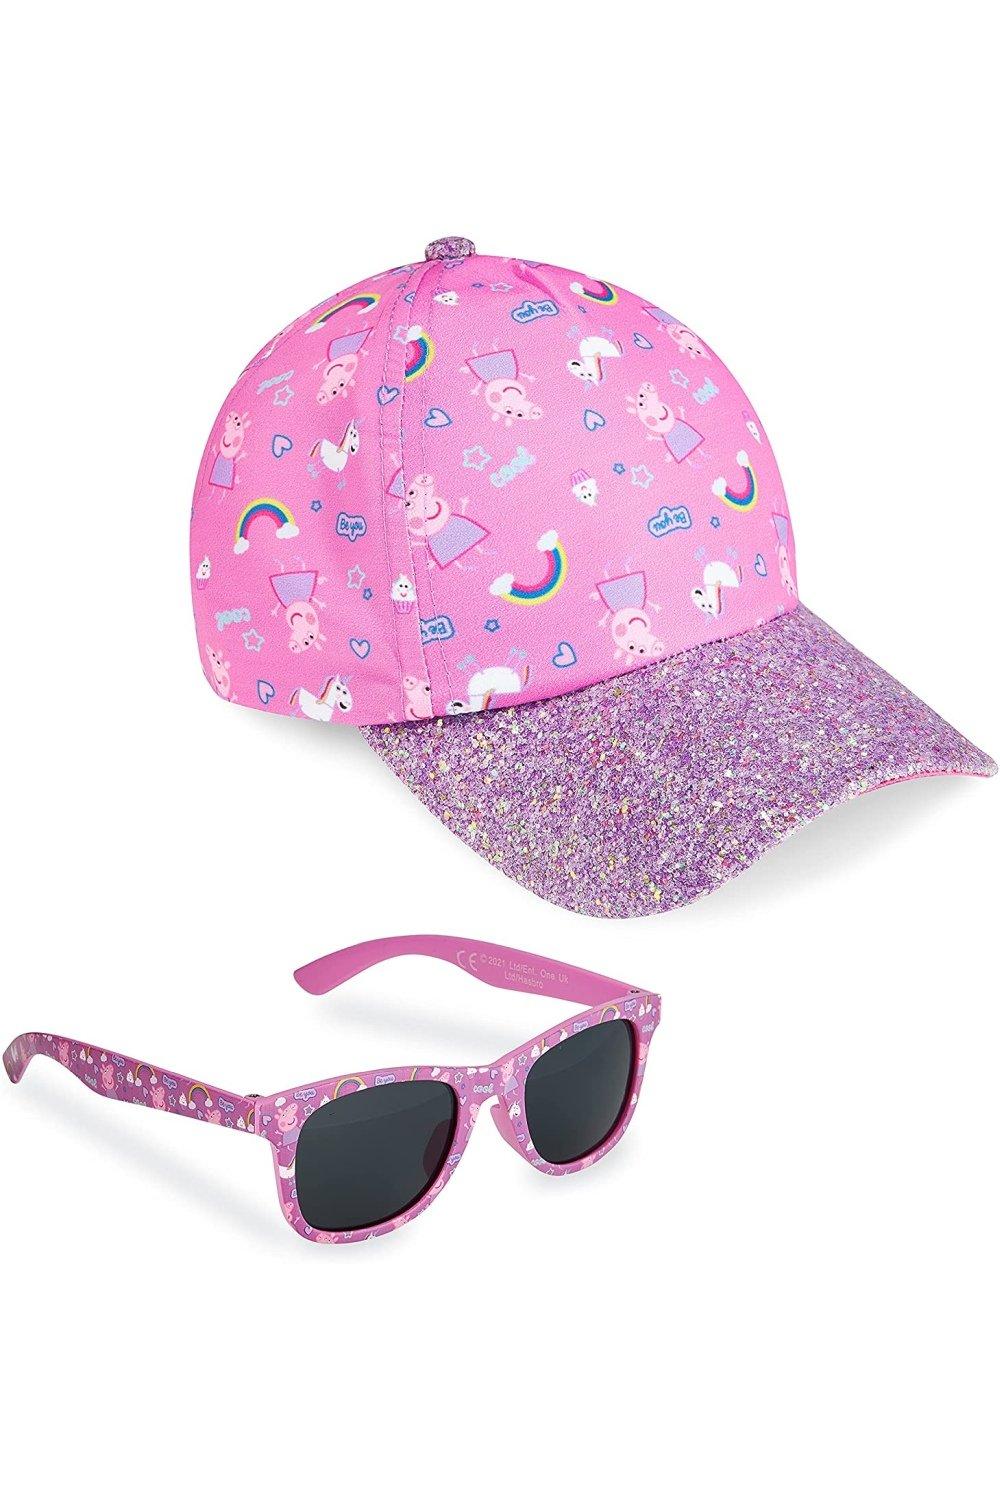 Кепка и солнцезащитные очки Peppa Pig, розовый свинка пеппа игр наб пеппа на уроке tm peppa pig